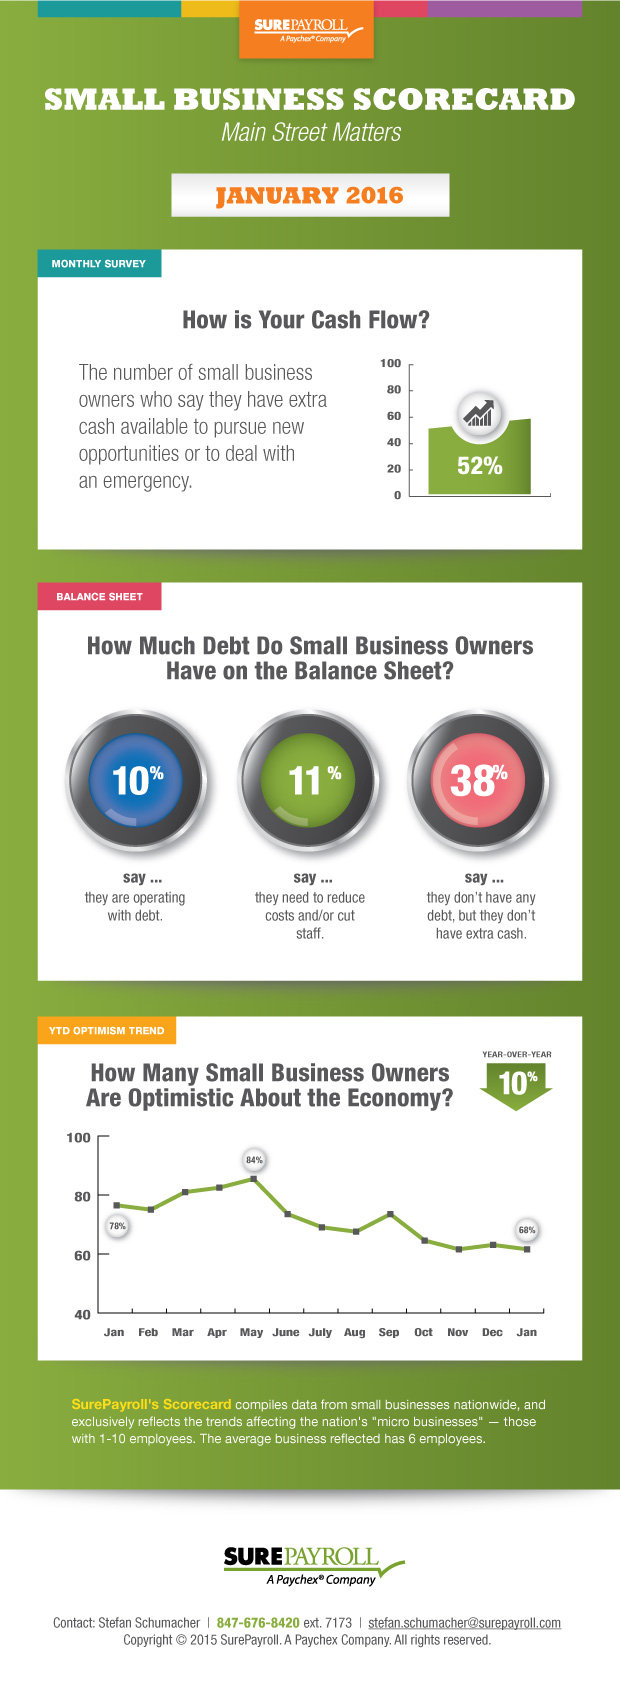 Small business scorecard - January 2016 - by SurePayroll